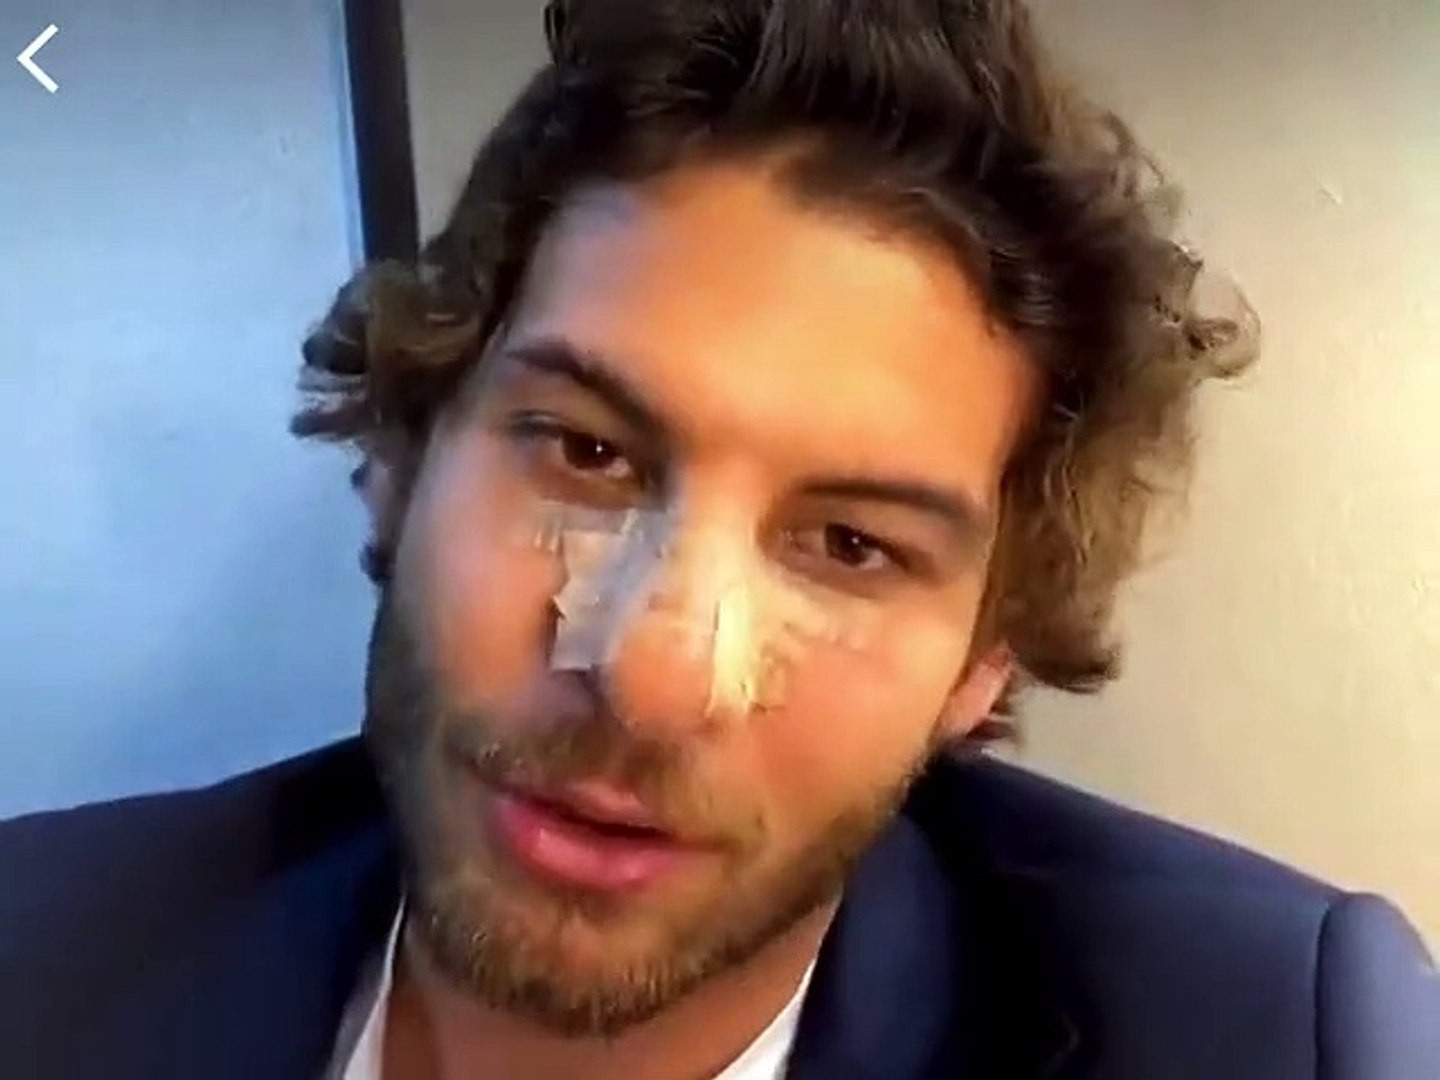 Fox TV'nin dizisindeki kavga sahnesinde oyuncunun burnu kırıldı